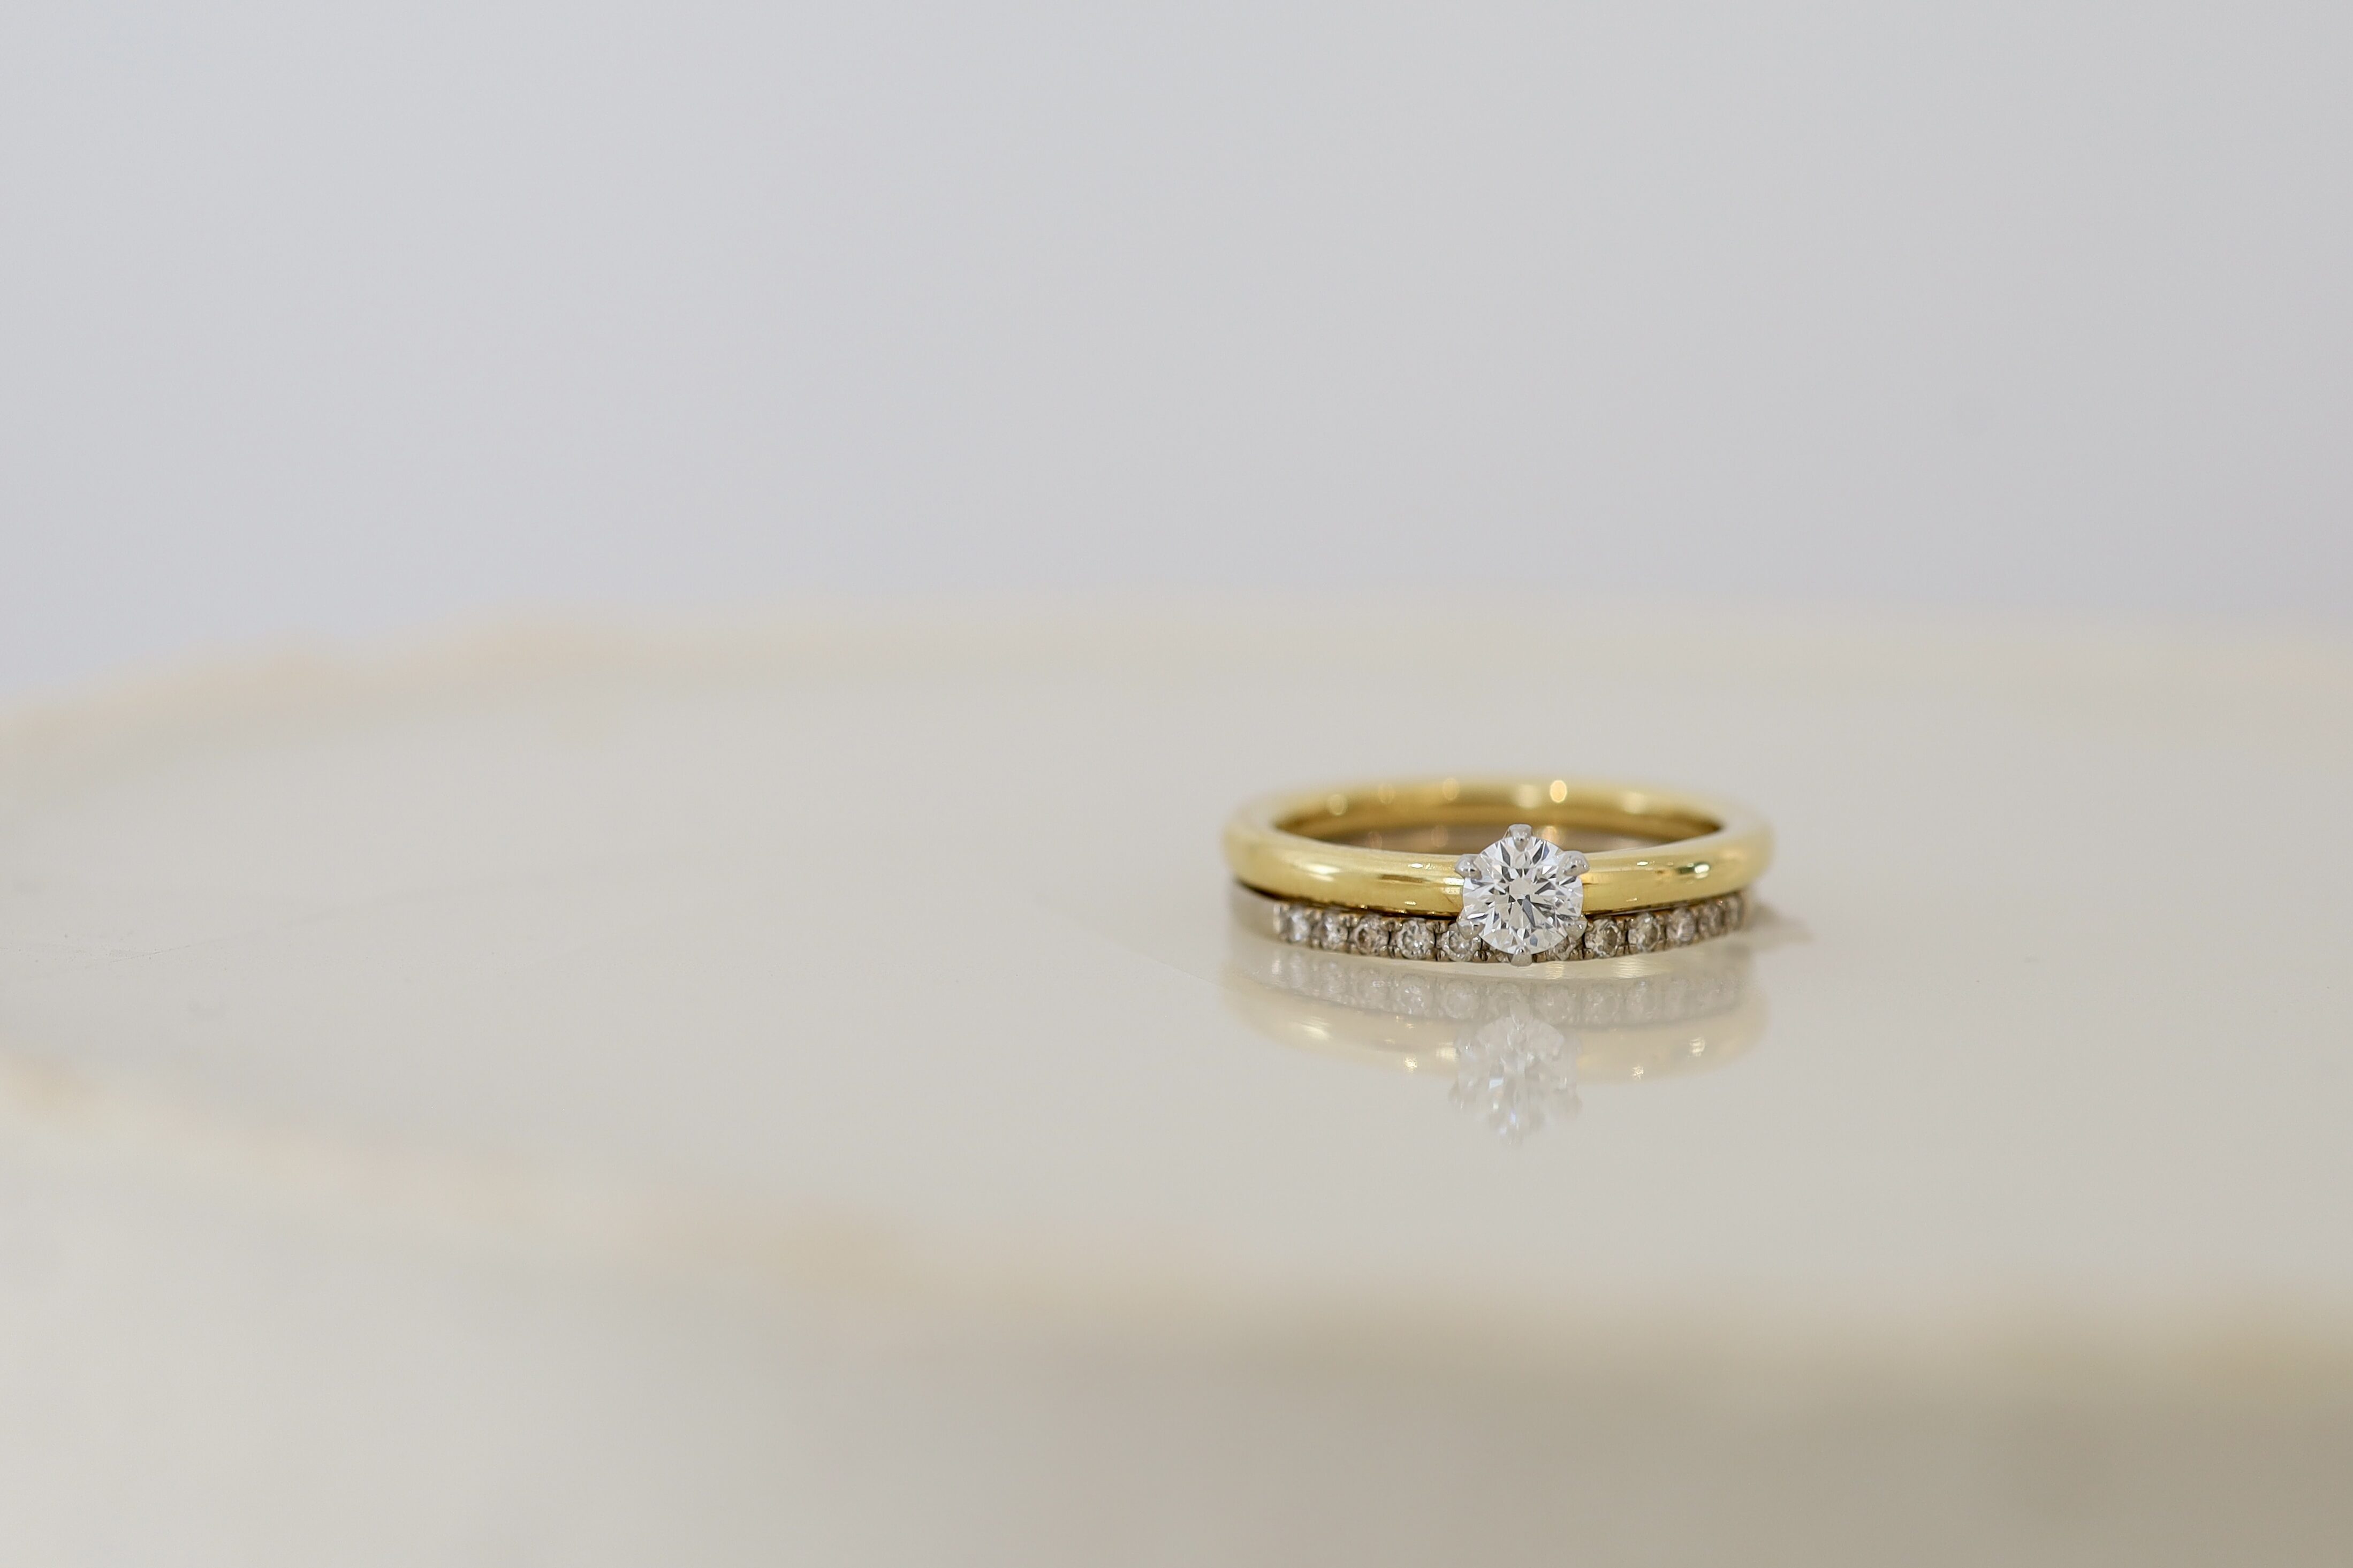 K18イエロー婚約指輪と、ブラウンダイヤのエタニティリングの重ね付け